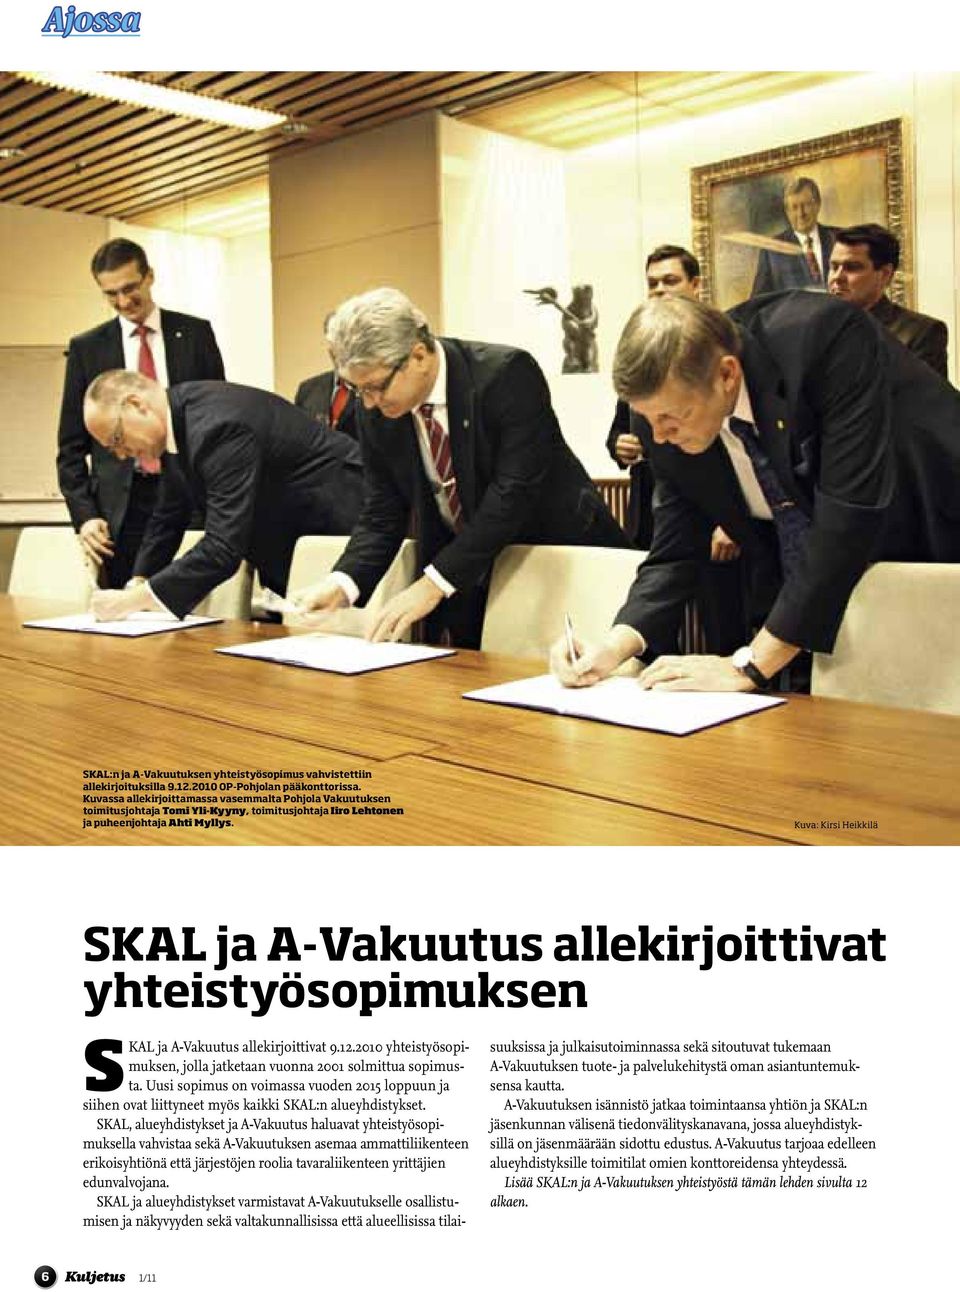 Kuva: Kirsi Heikkilä SKAL ja A-Vakuutus allekirjoittivat yhteistyösopimuksen SKAL ja A-Vakuutus allekirjoittivat 9.12.2010 yhteistyösopimuksen, jolla jatketaan vuonna 2001 solmittua sopimusta.